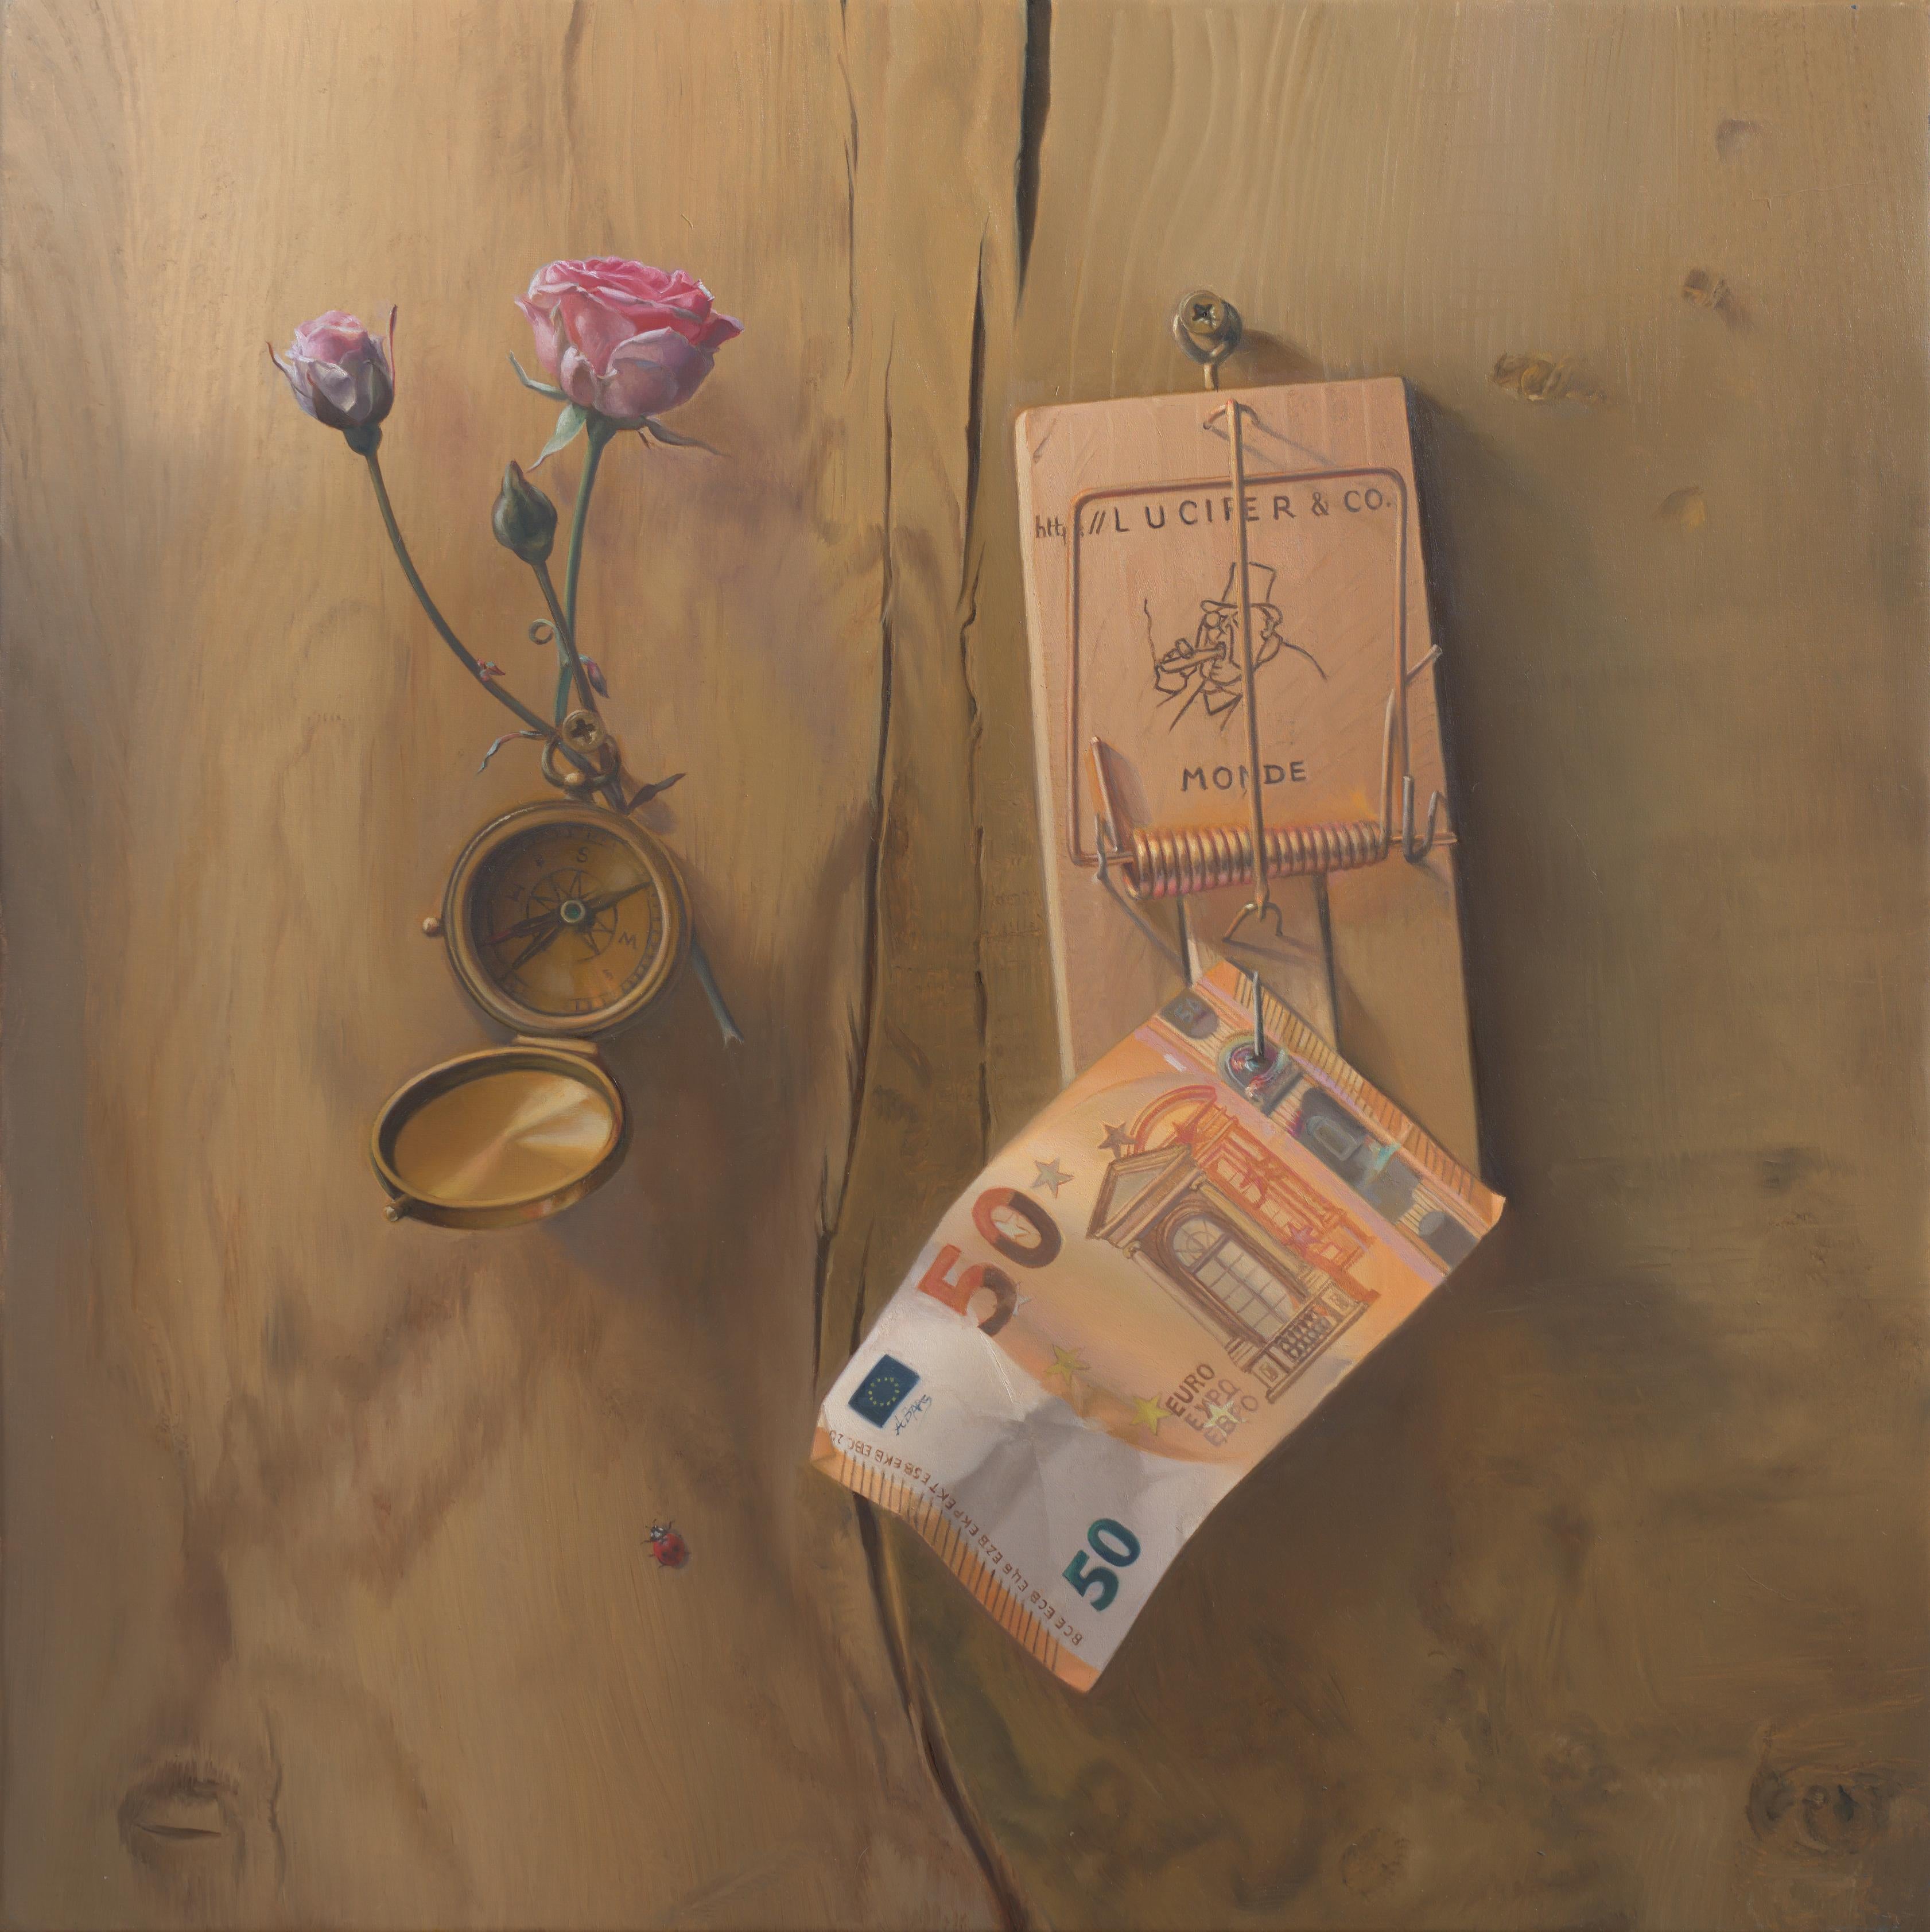 "Nous avons perdu le Nord", fissure de Wood, boussole, argent, fleur, symbolisme Peinture à l'huile